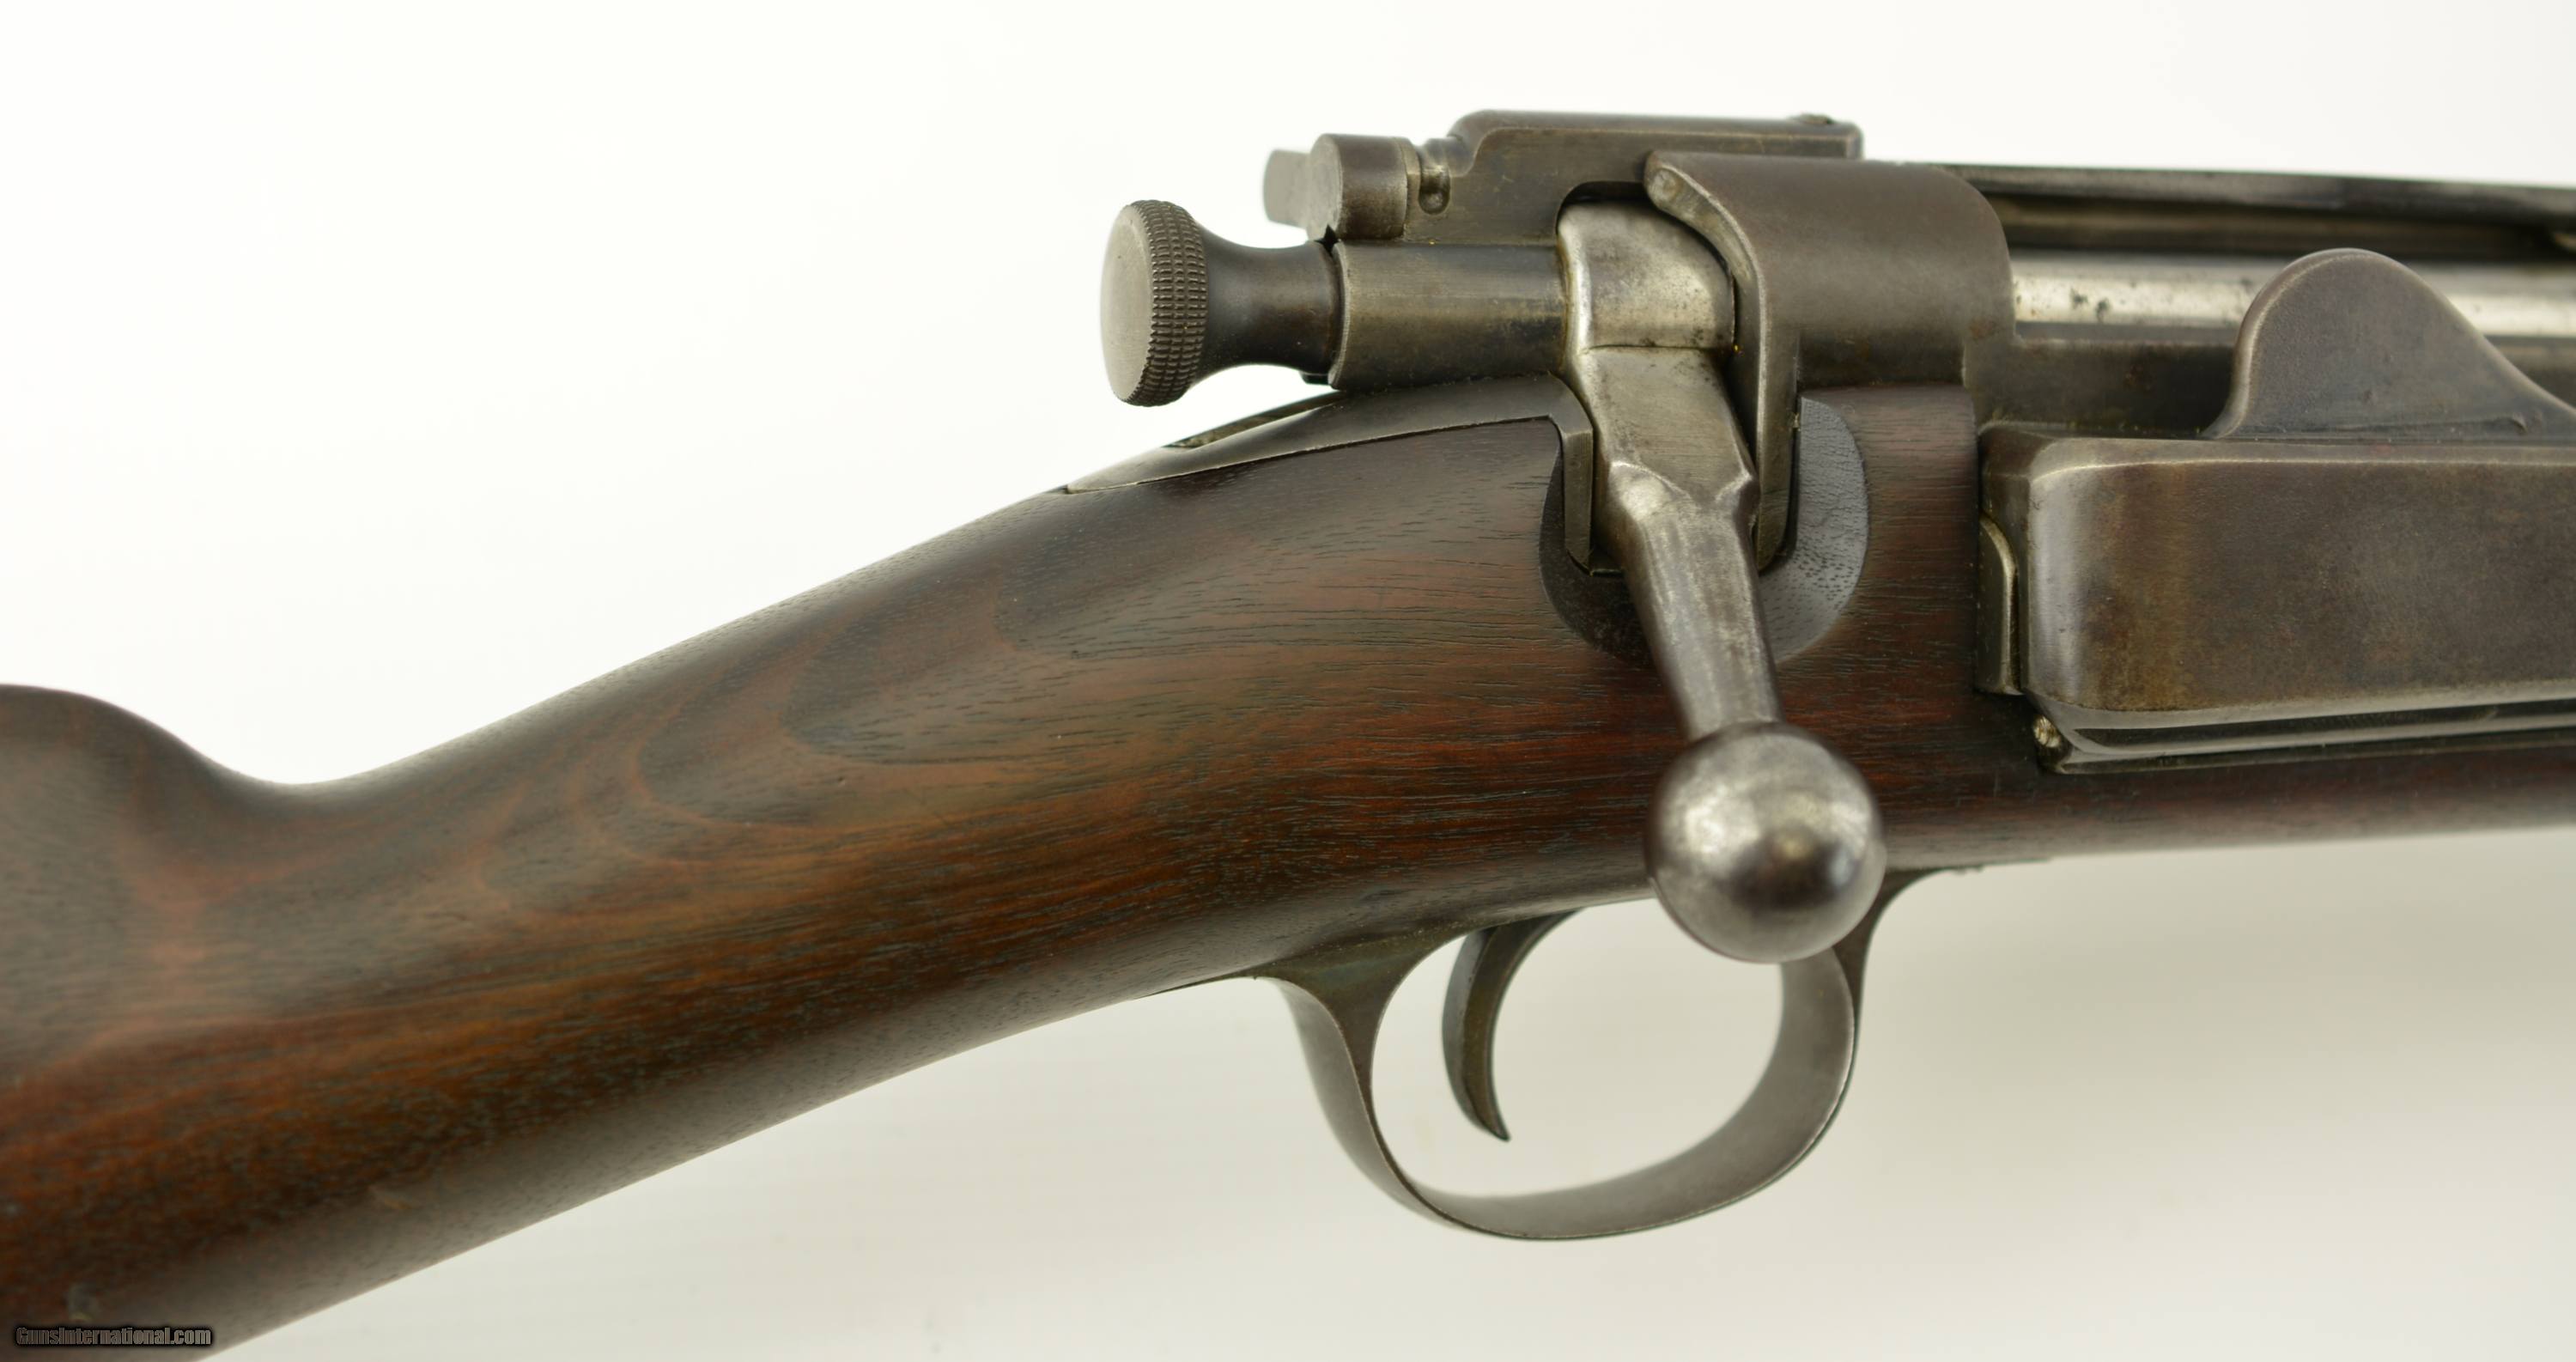 springfield 1898 krag rifle serial numbers